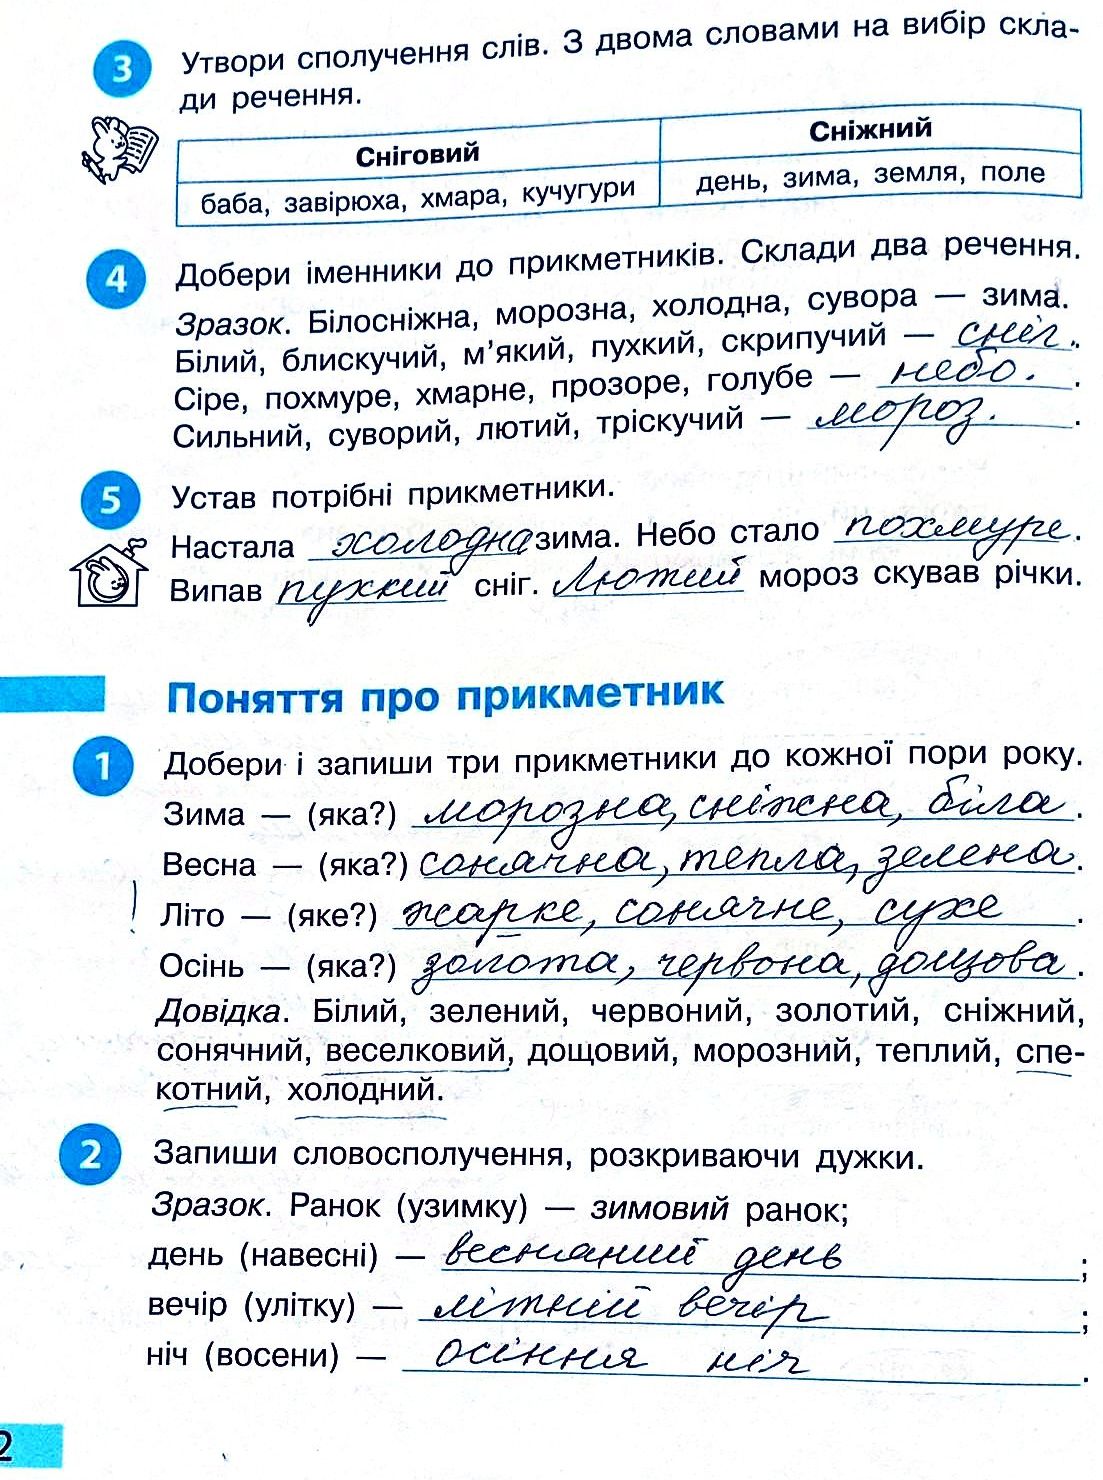 Сторінка 2 частина 2 гдз 3 клас робочий зошит українська мова Большакова